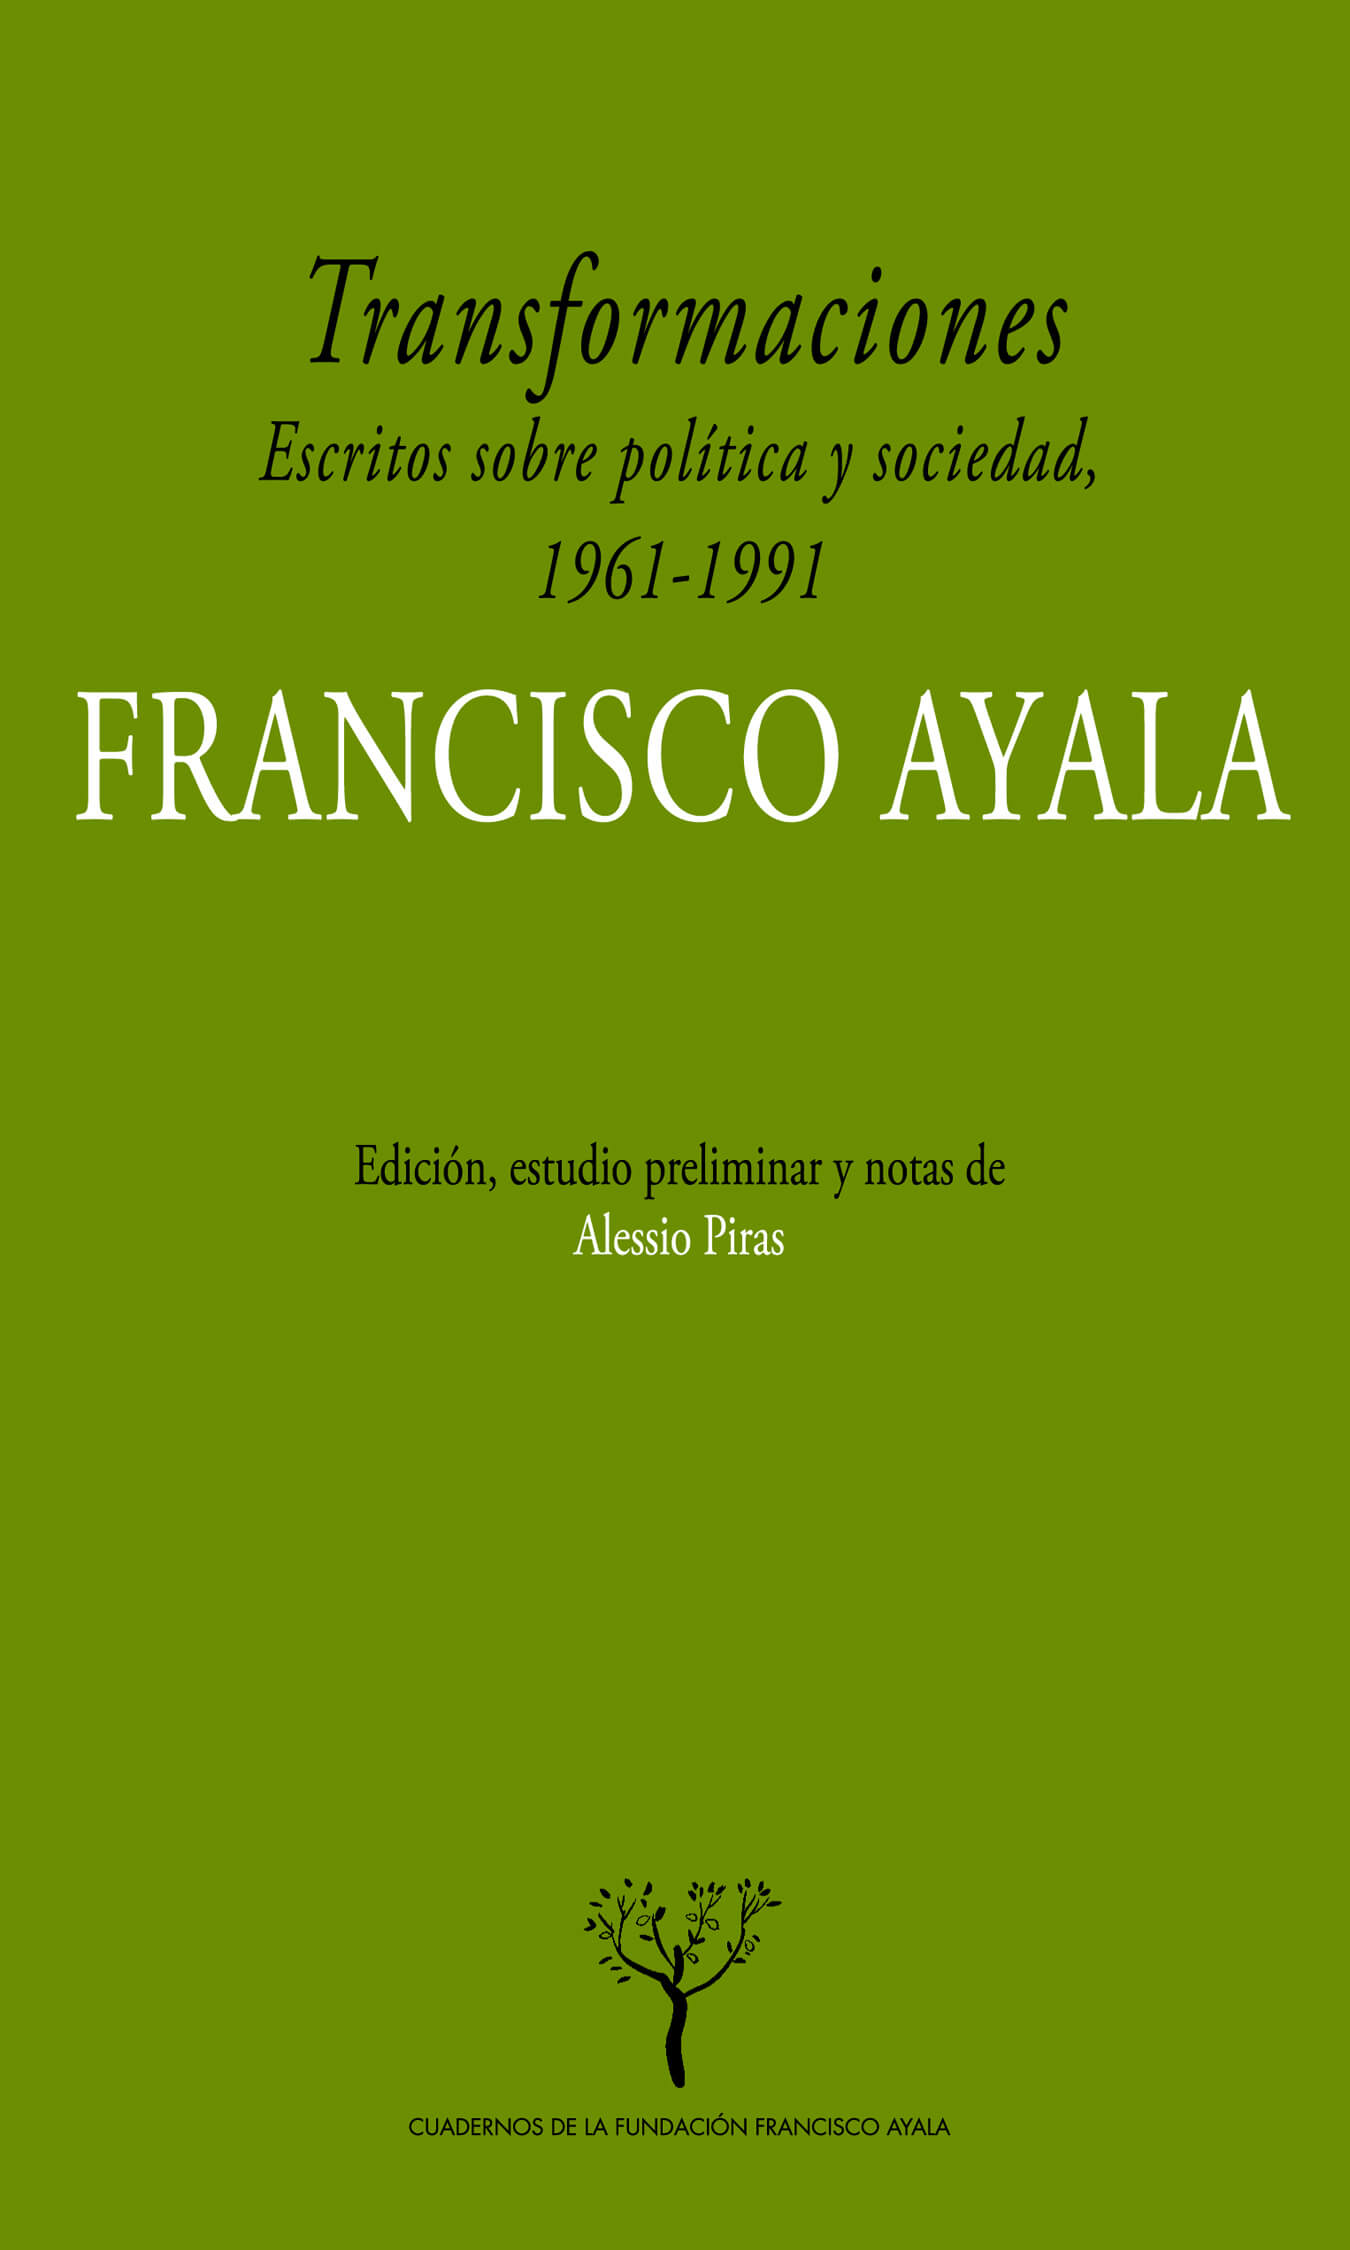 Transformaciones. Escritos sobre política y sociedad en España, 1961-1991